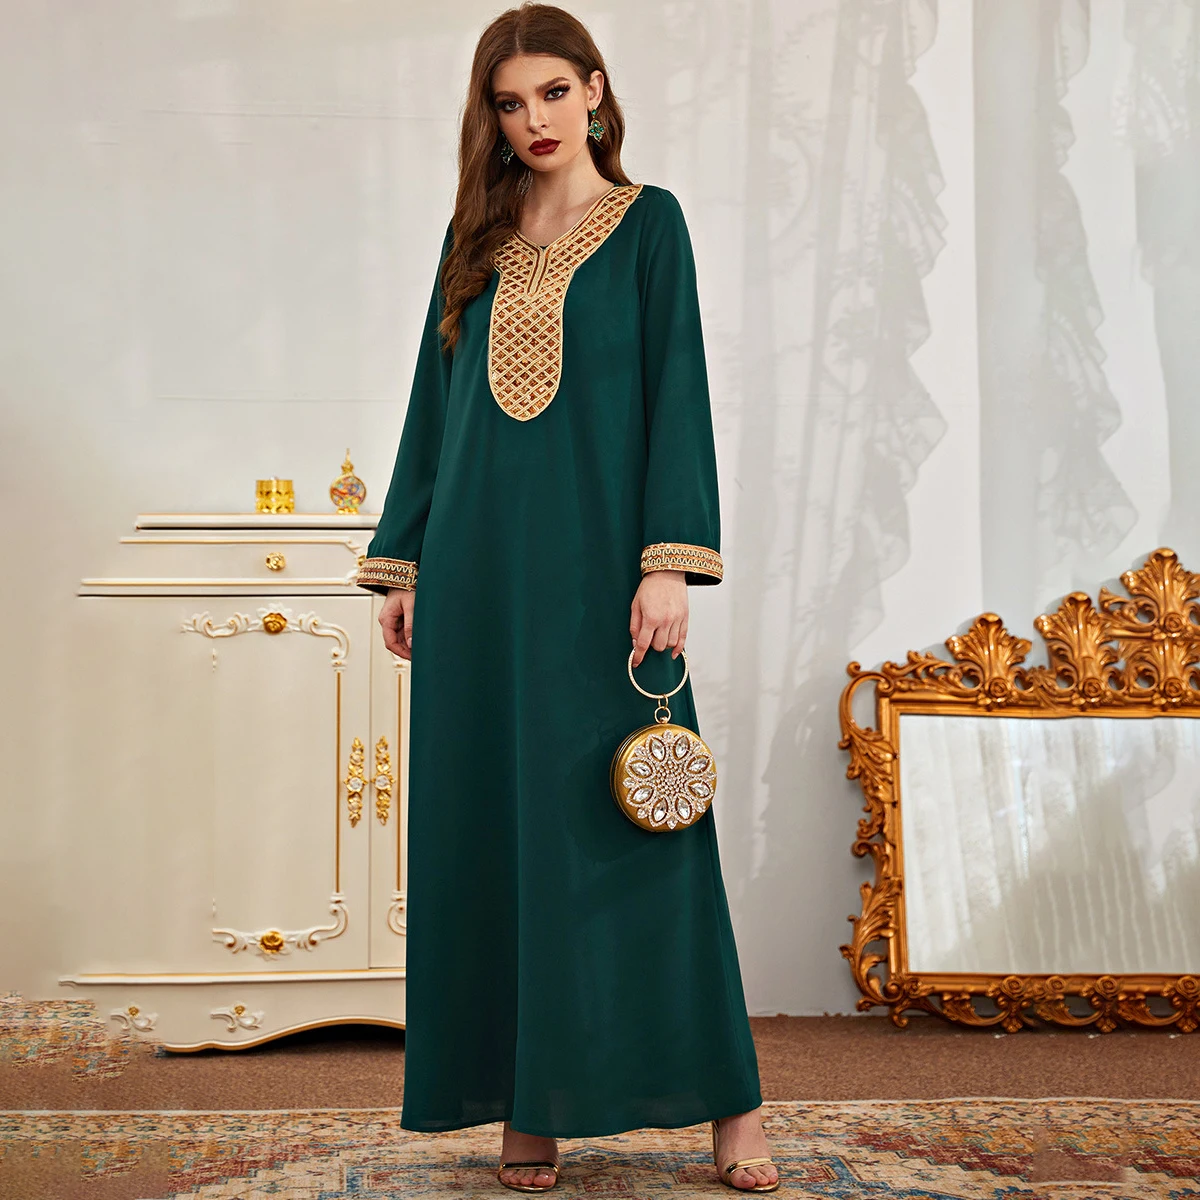 Женское платье с круглым вырезом Abaya Dubai, модное зеленое однотонное платье в этническом мусульманском стиле с блестками, длинная юбка